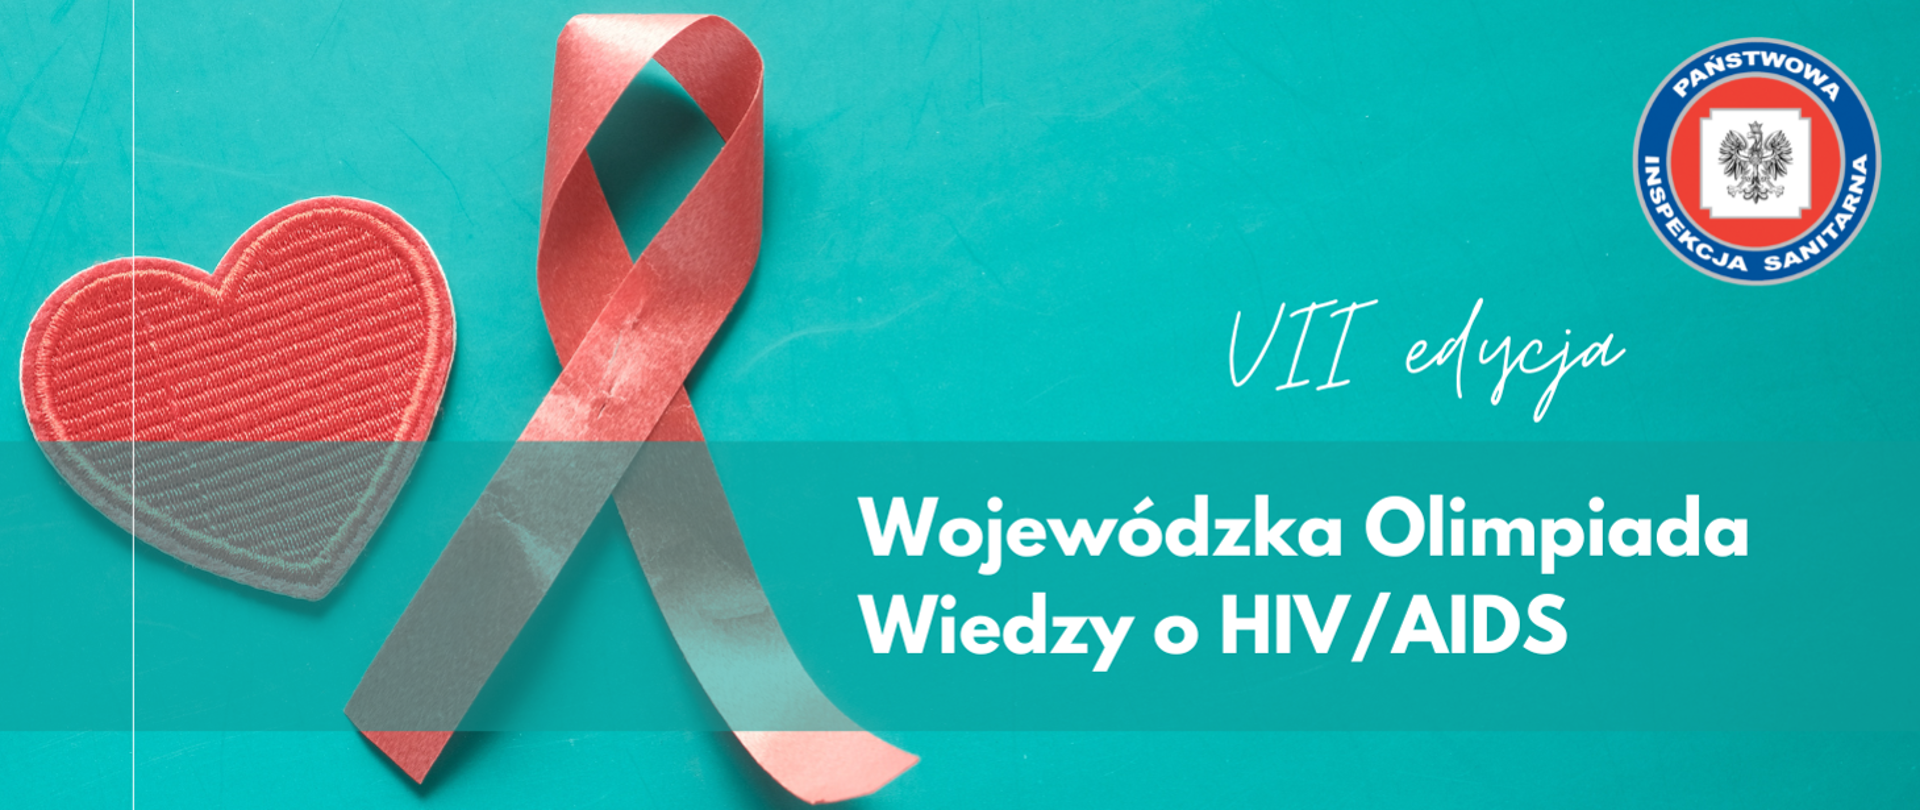 olimpiada wiedzy o HIV/AIDS